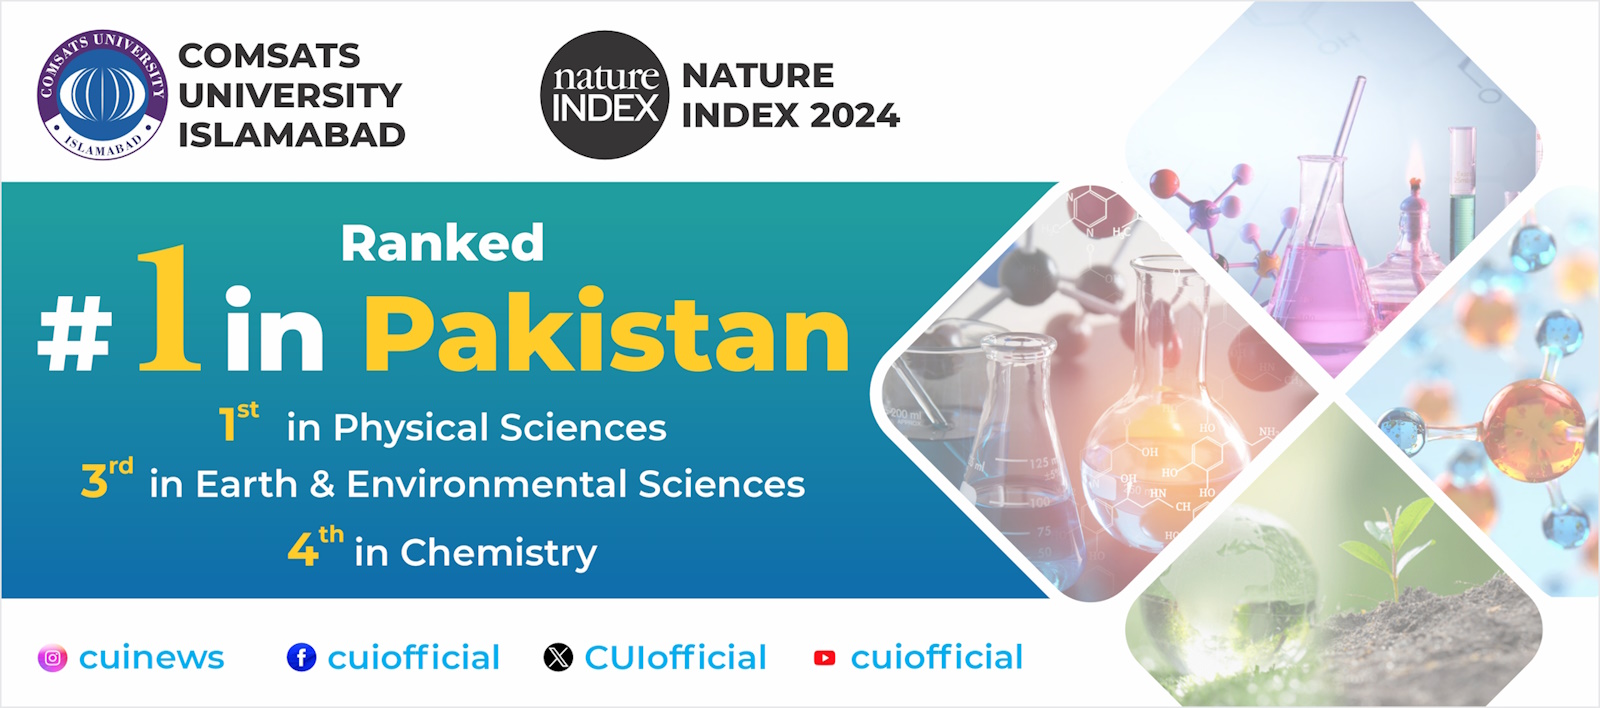 Nature Index 2024